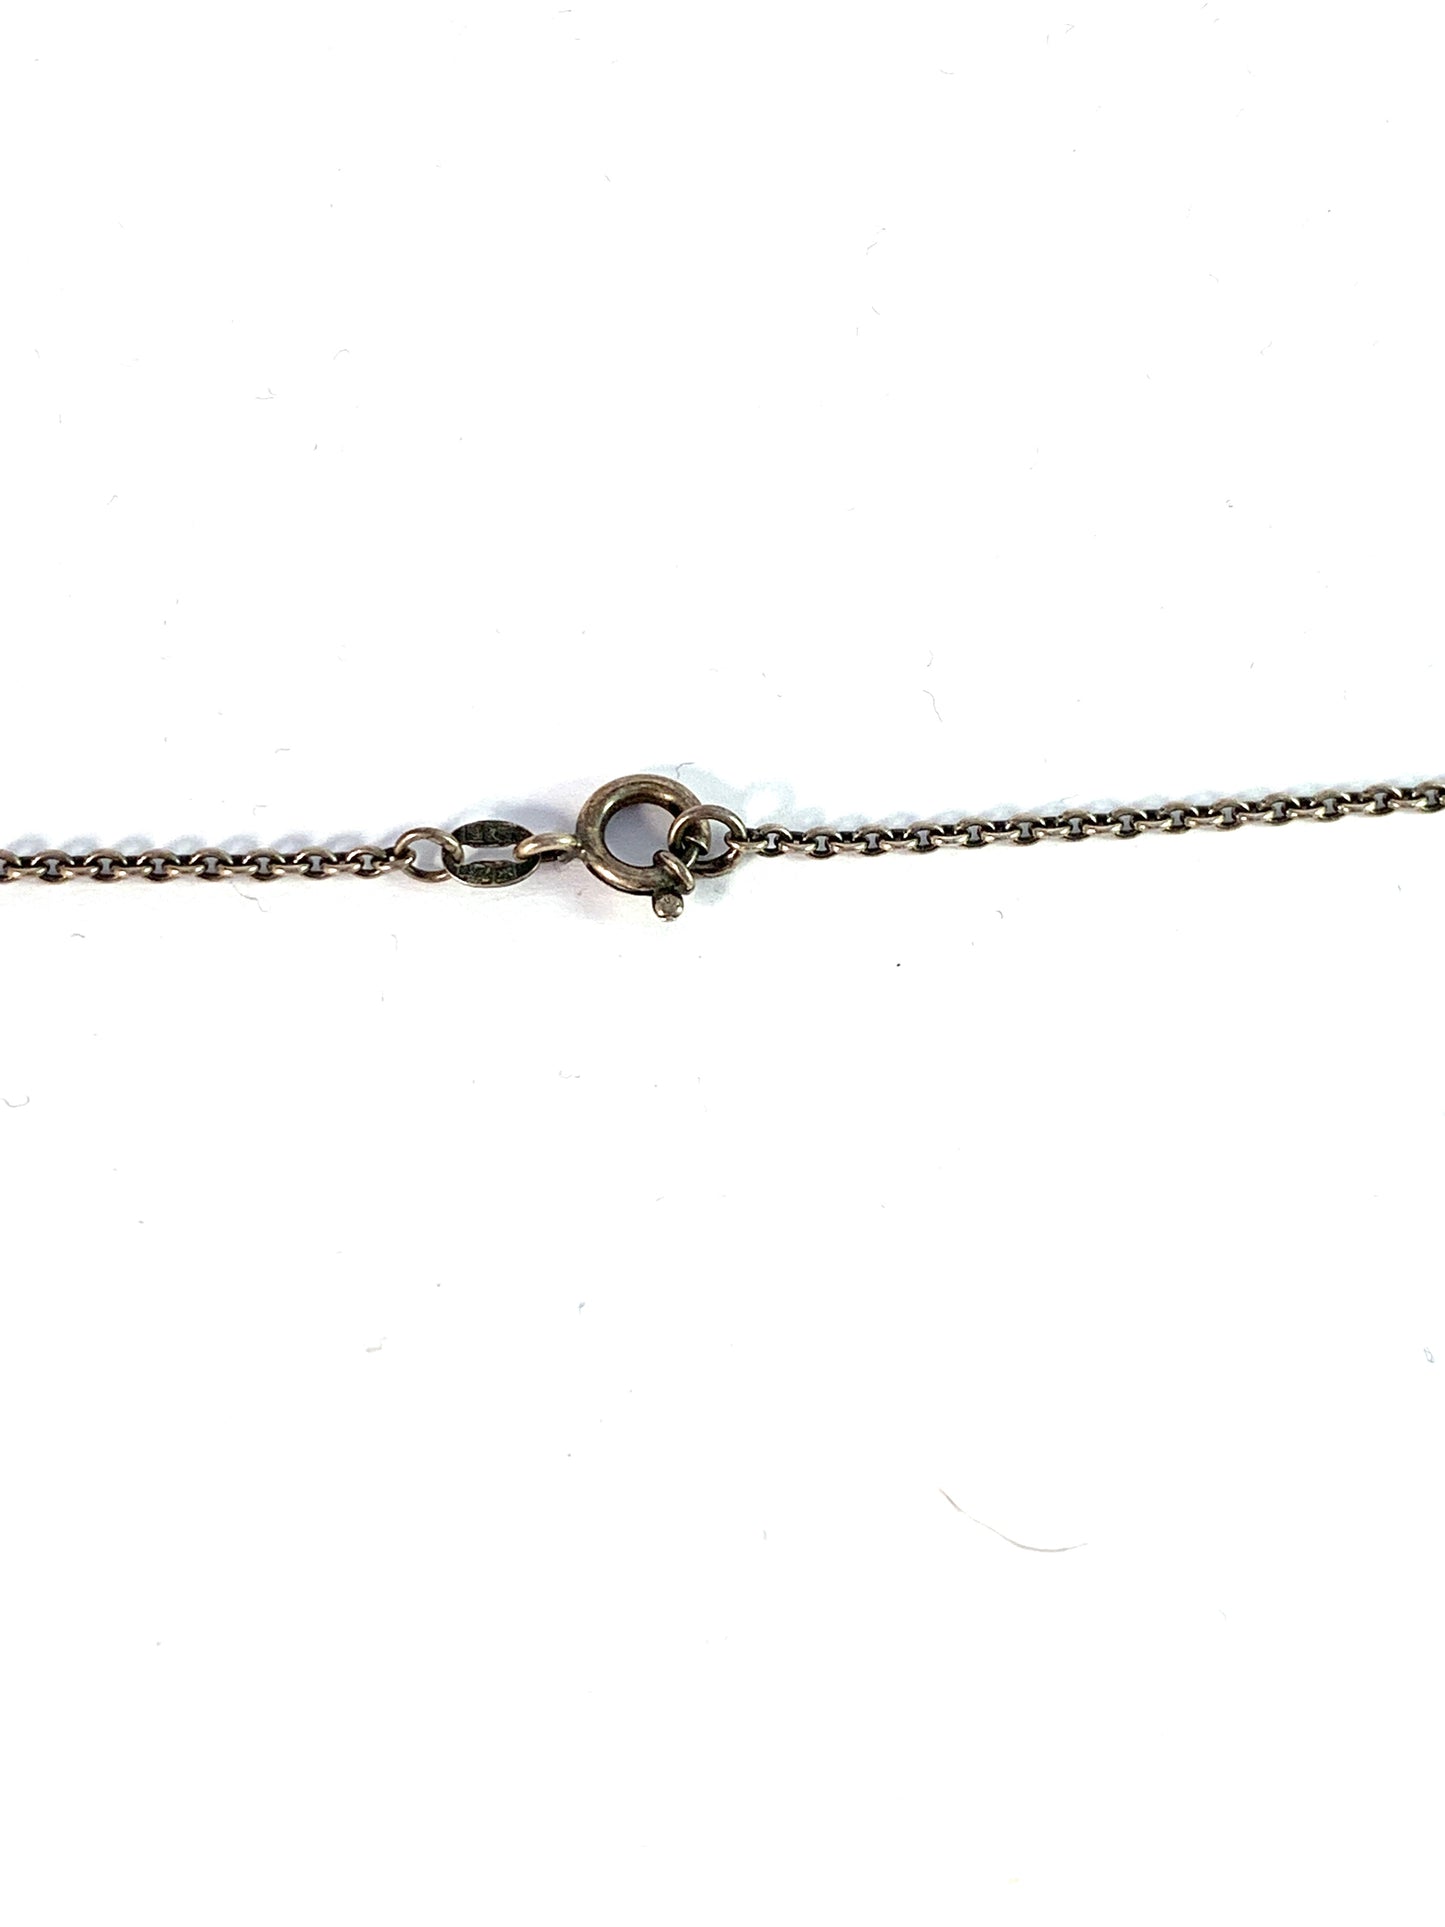 Kimmo Virkkunen, for Kalevala Koru, Finland. Vintage Sterling Silver Pendant Necklace. Design: TÖYRI, Fortune Bird.